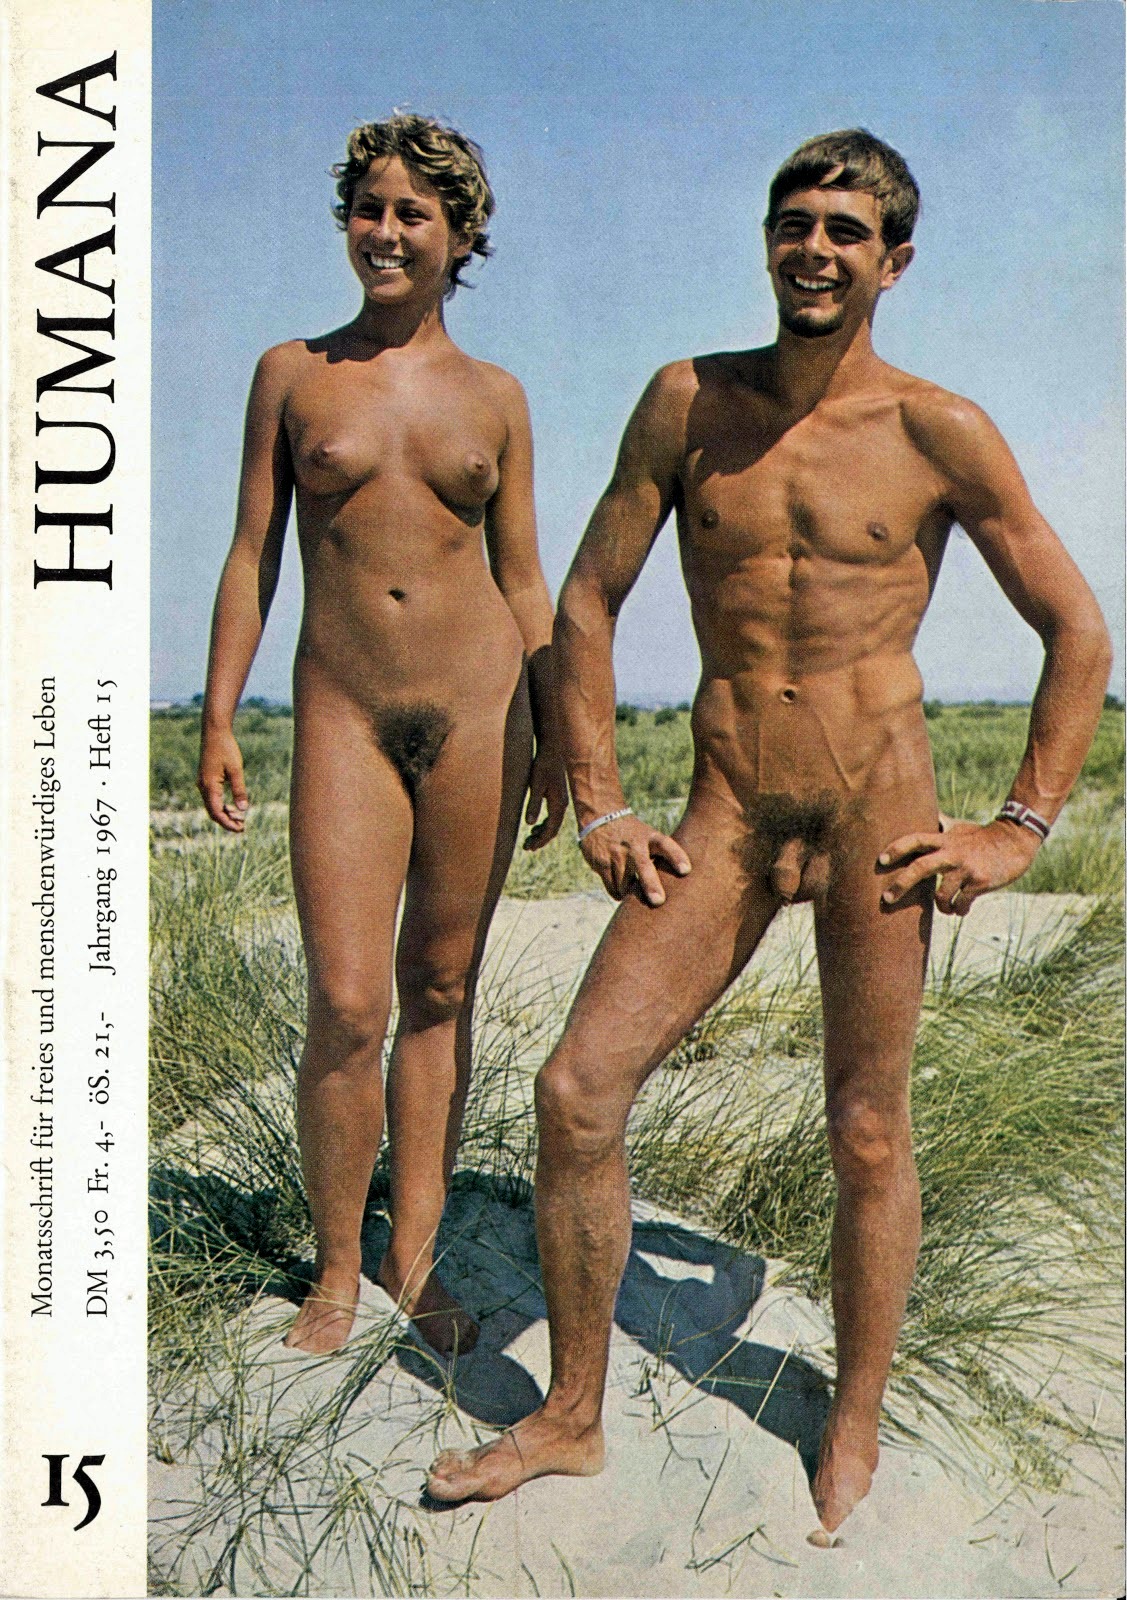 Nude Men Magazine 26